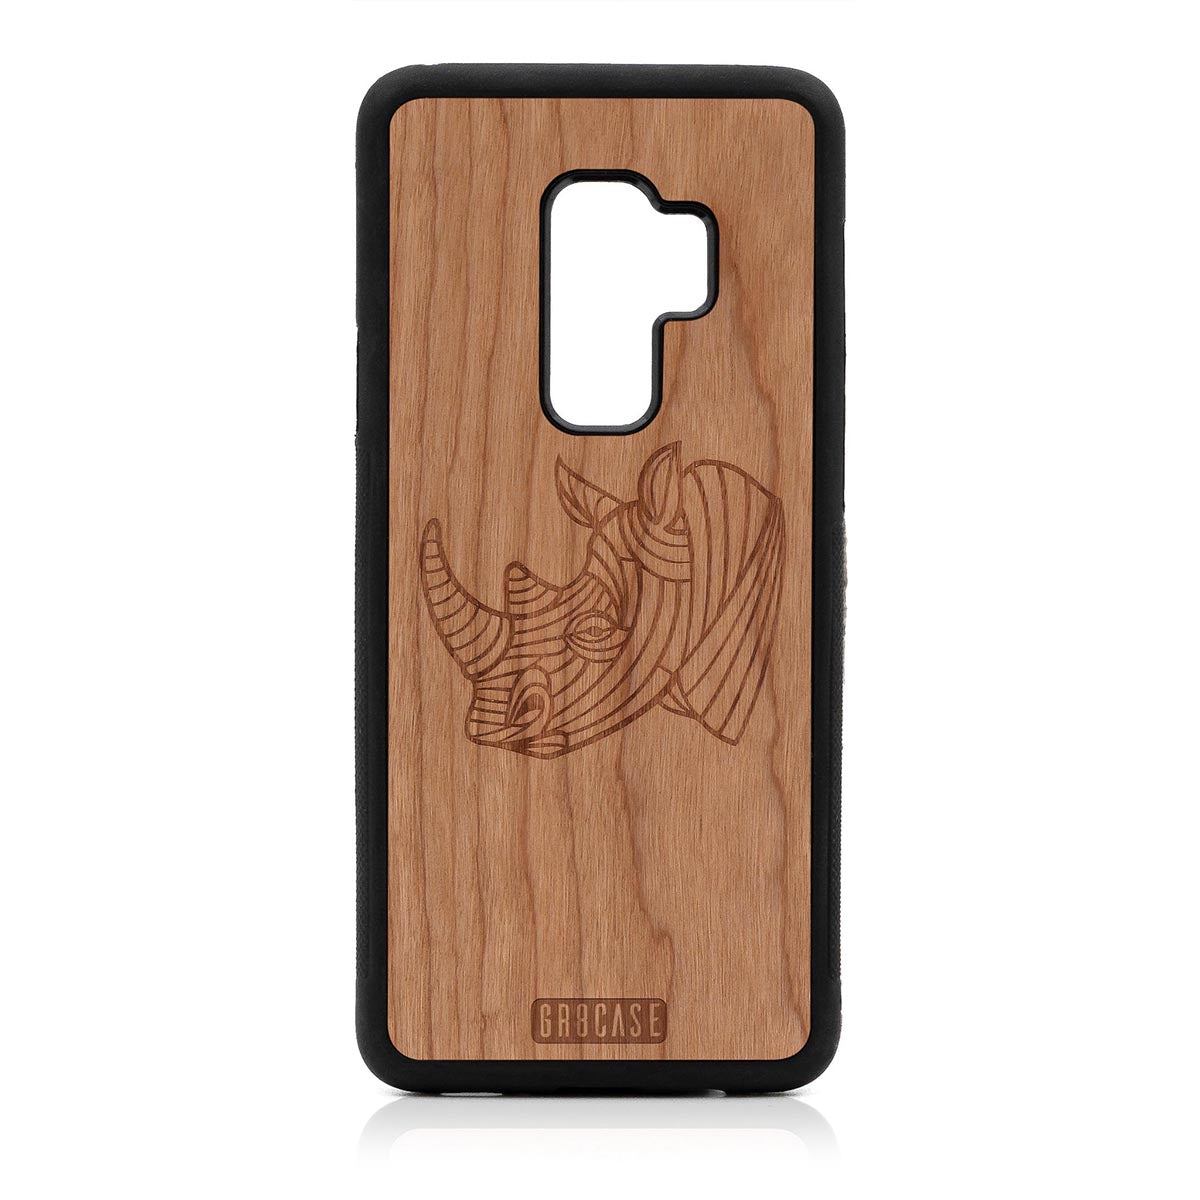 Rhino Design Wood Case Samsung Galaxy S9 Plus by GR8CASE